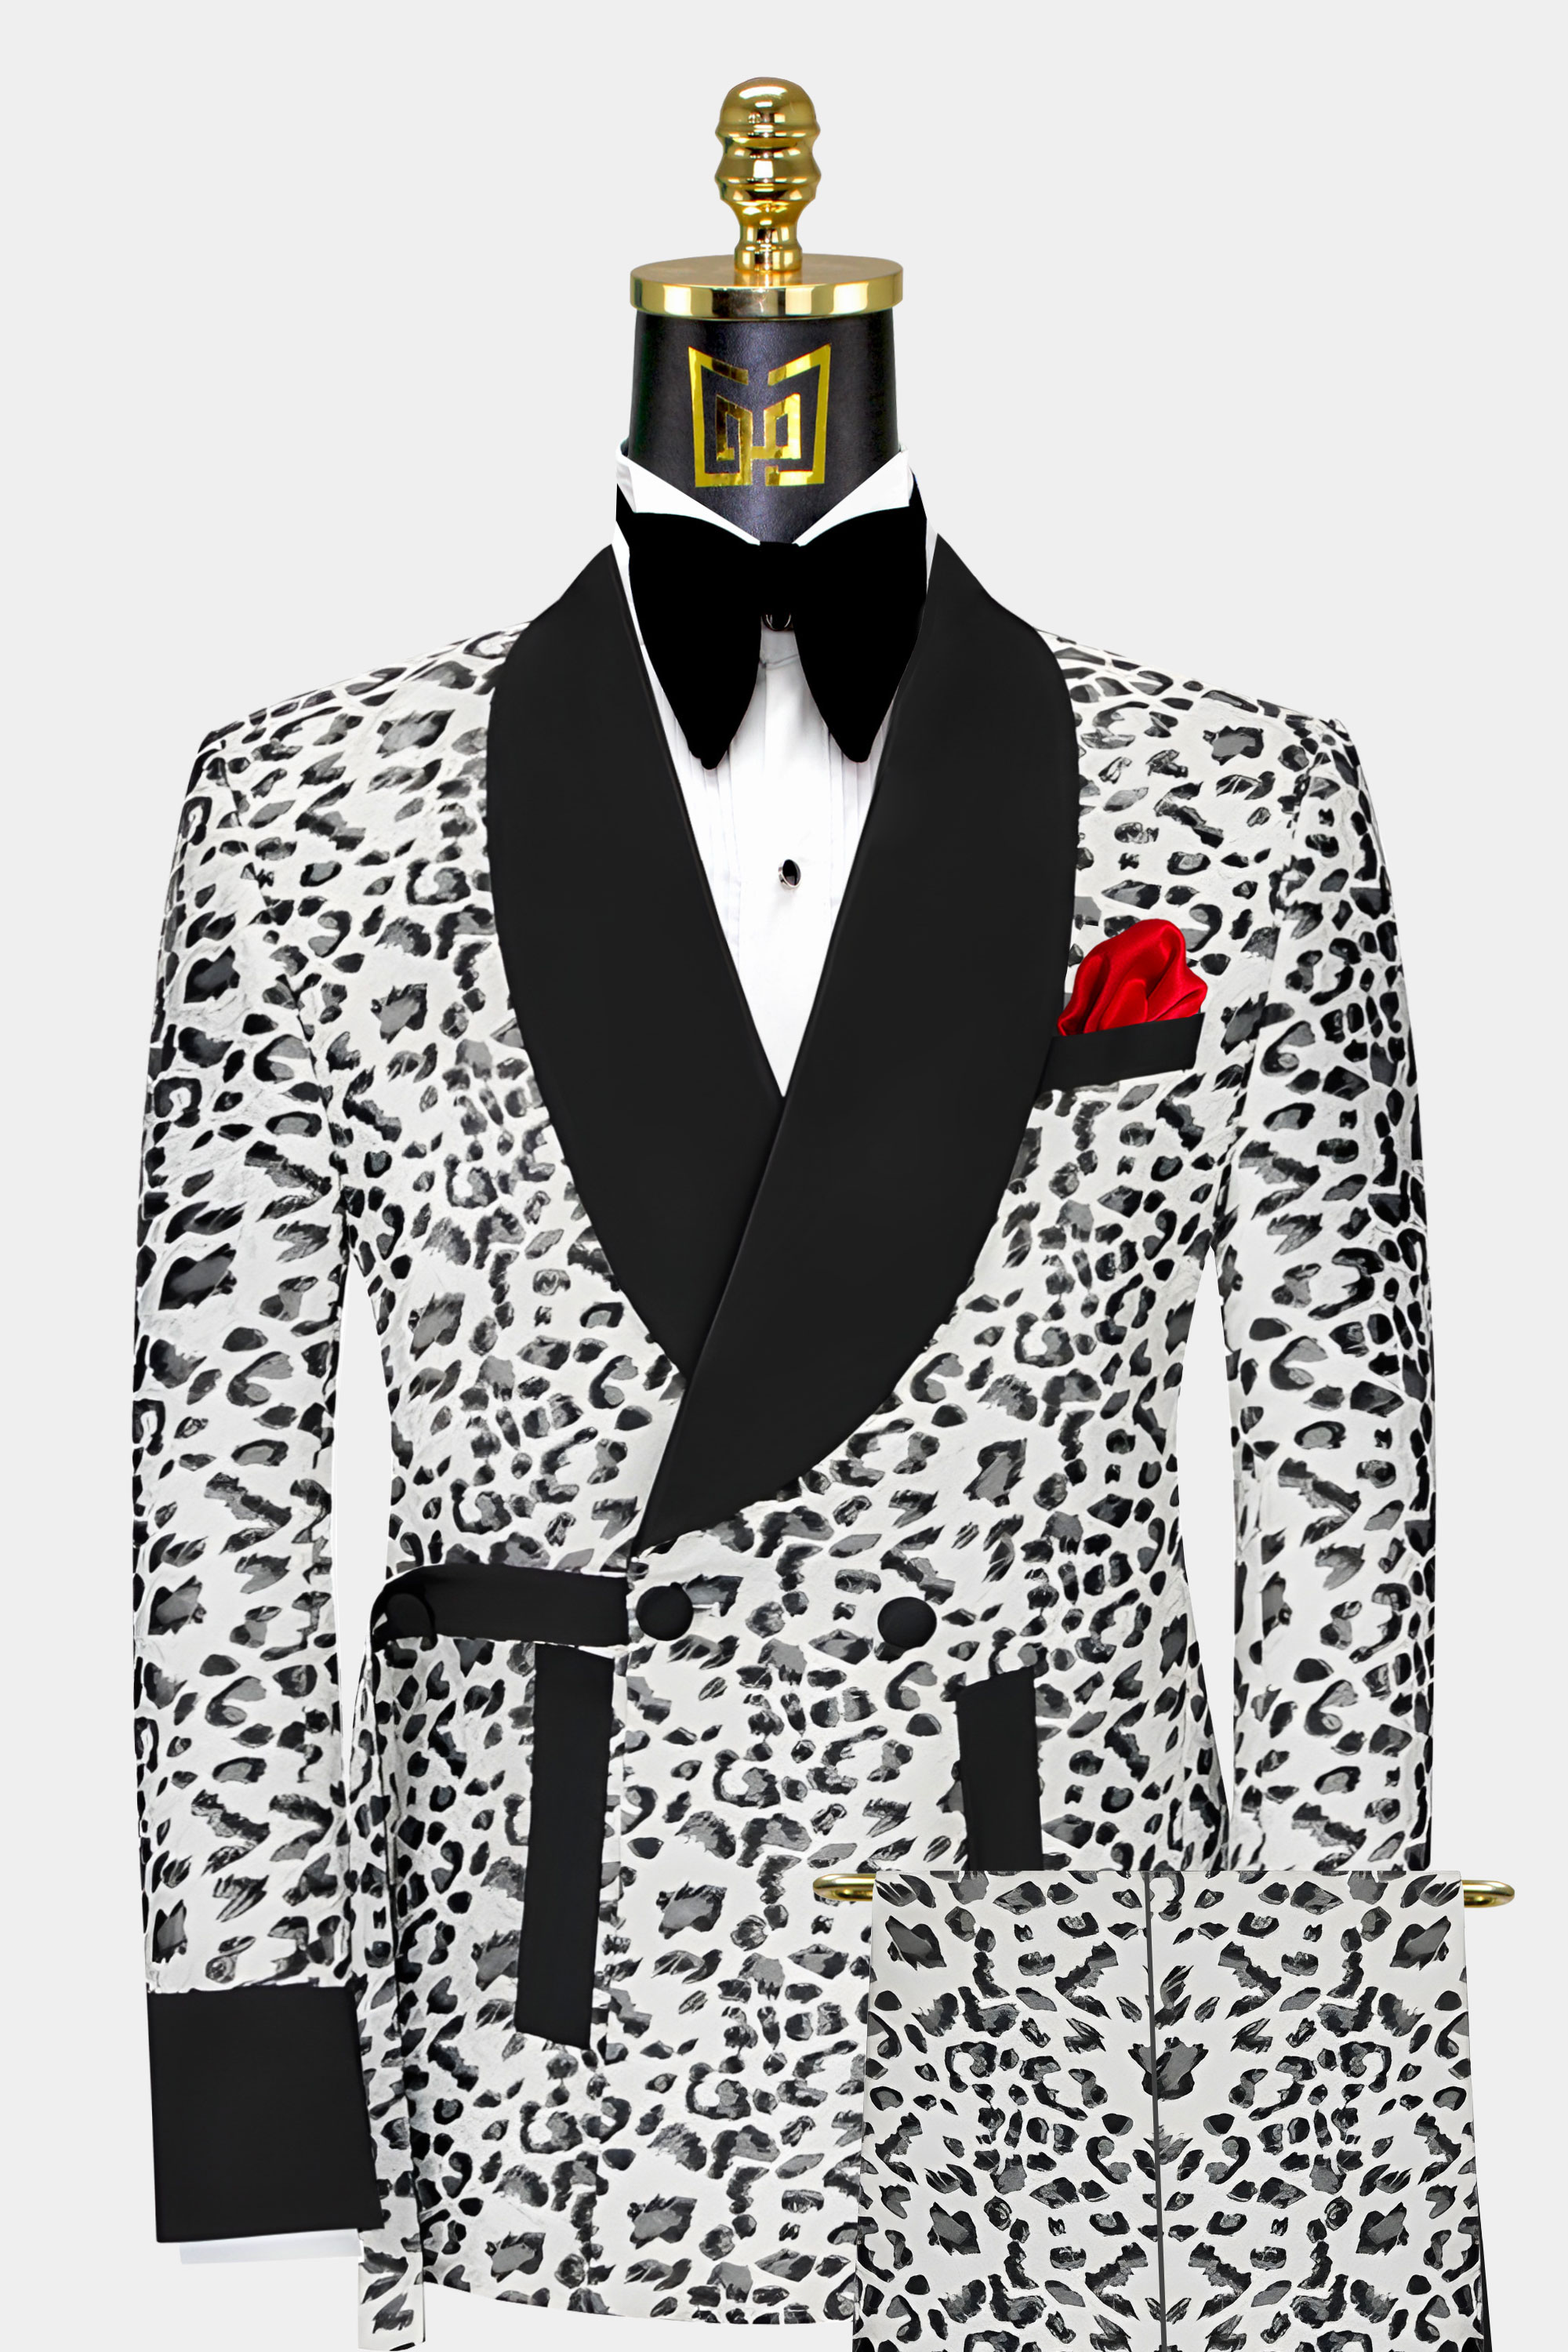 Jaguar-Tuxedo-Wedding-Groom-Prom-Suit-Cheetah-Leopard-from-Gentlemansguru.com